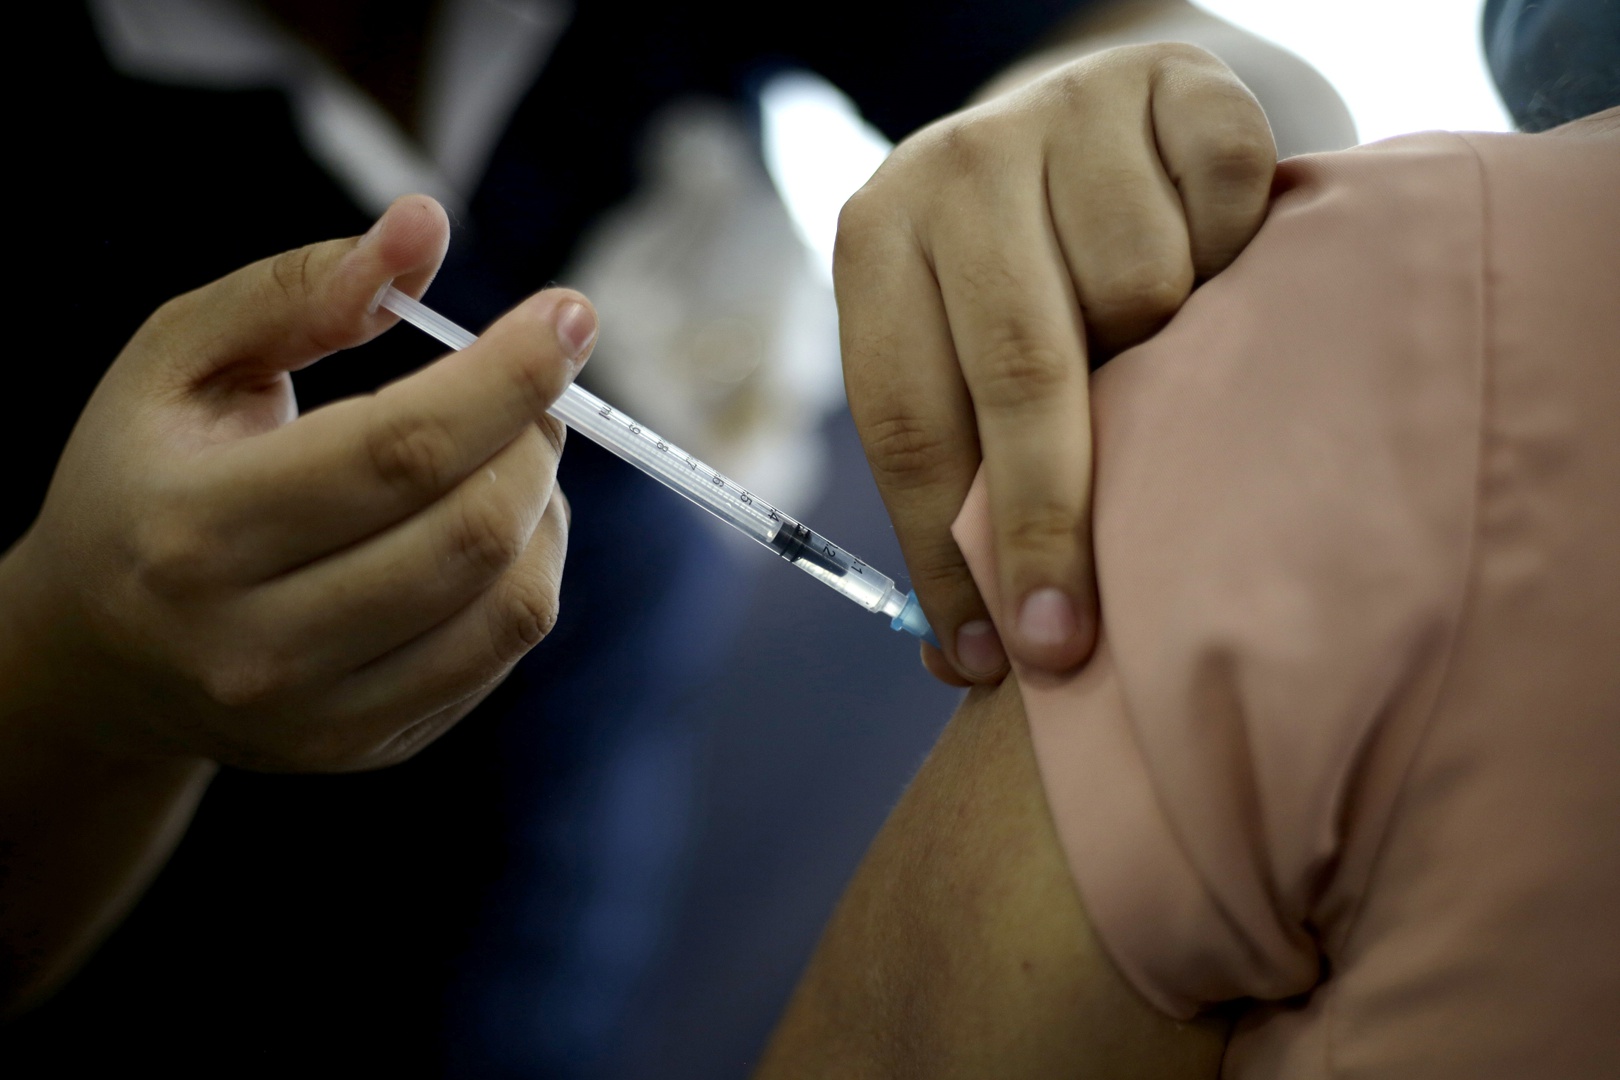 el 61 % de la población confía más en las vacunas después de la pandemia del covid